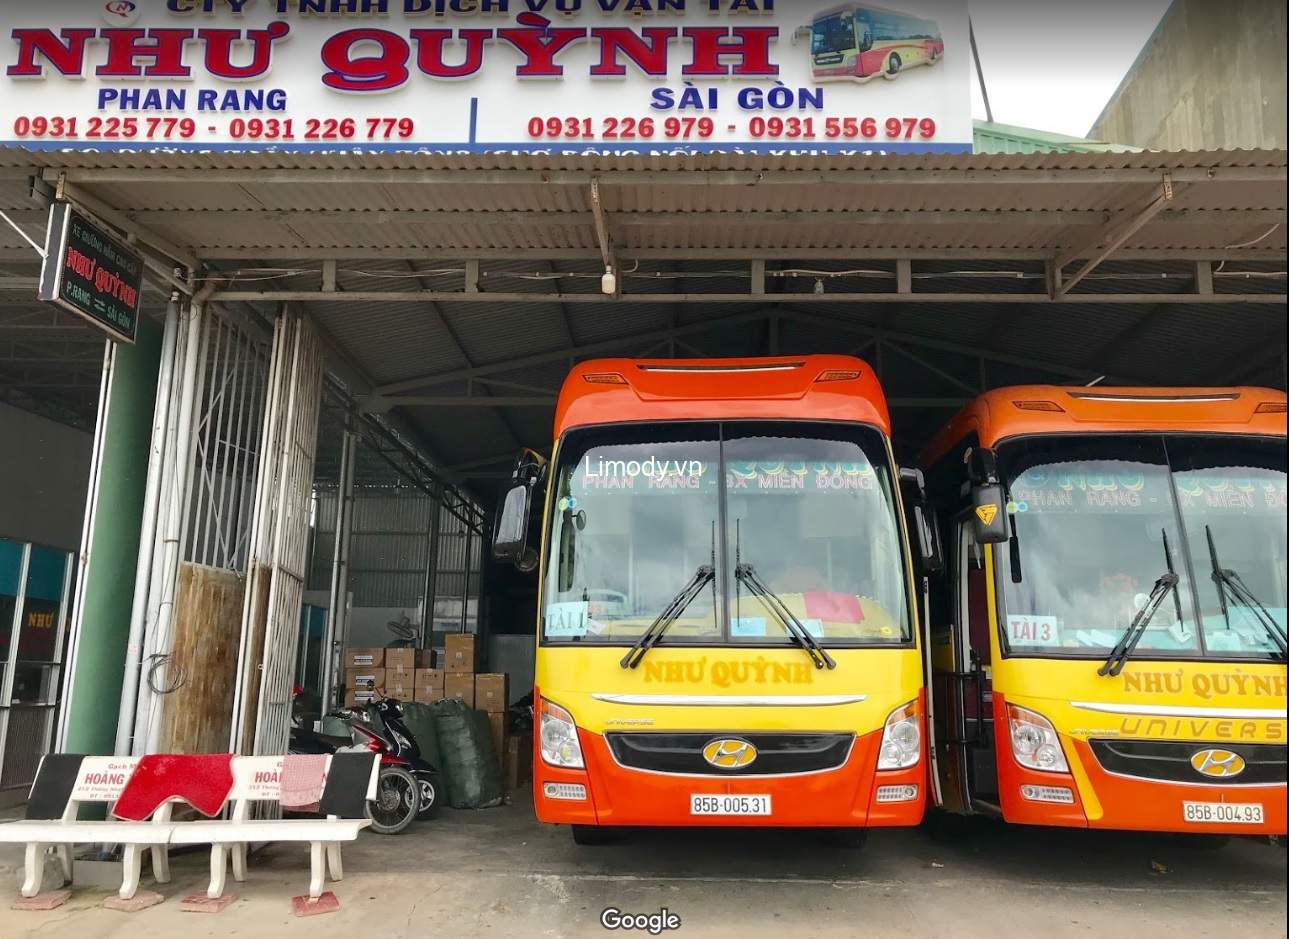 Xe Như Quỳnh: Bến xe, giá vé, điện thoại đặt vé, lịch trình đi Ninh Thuận